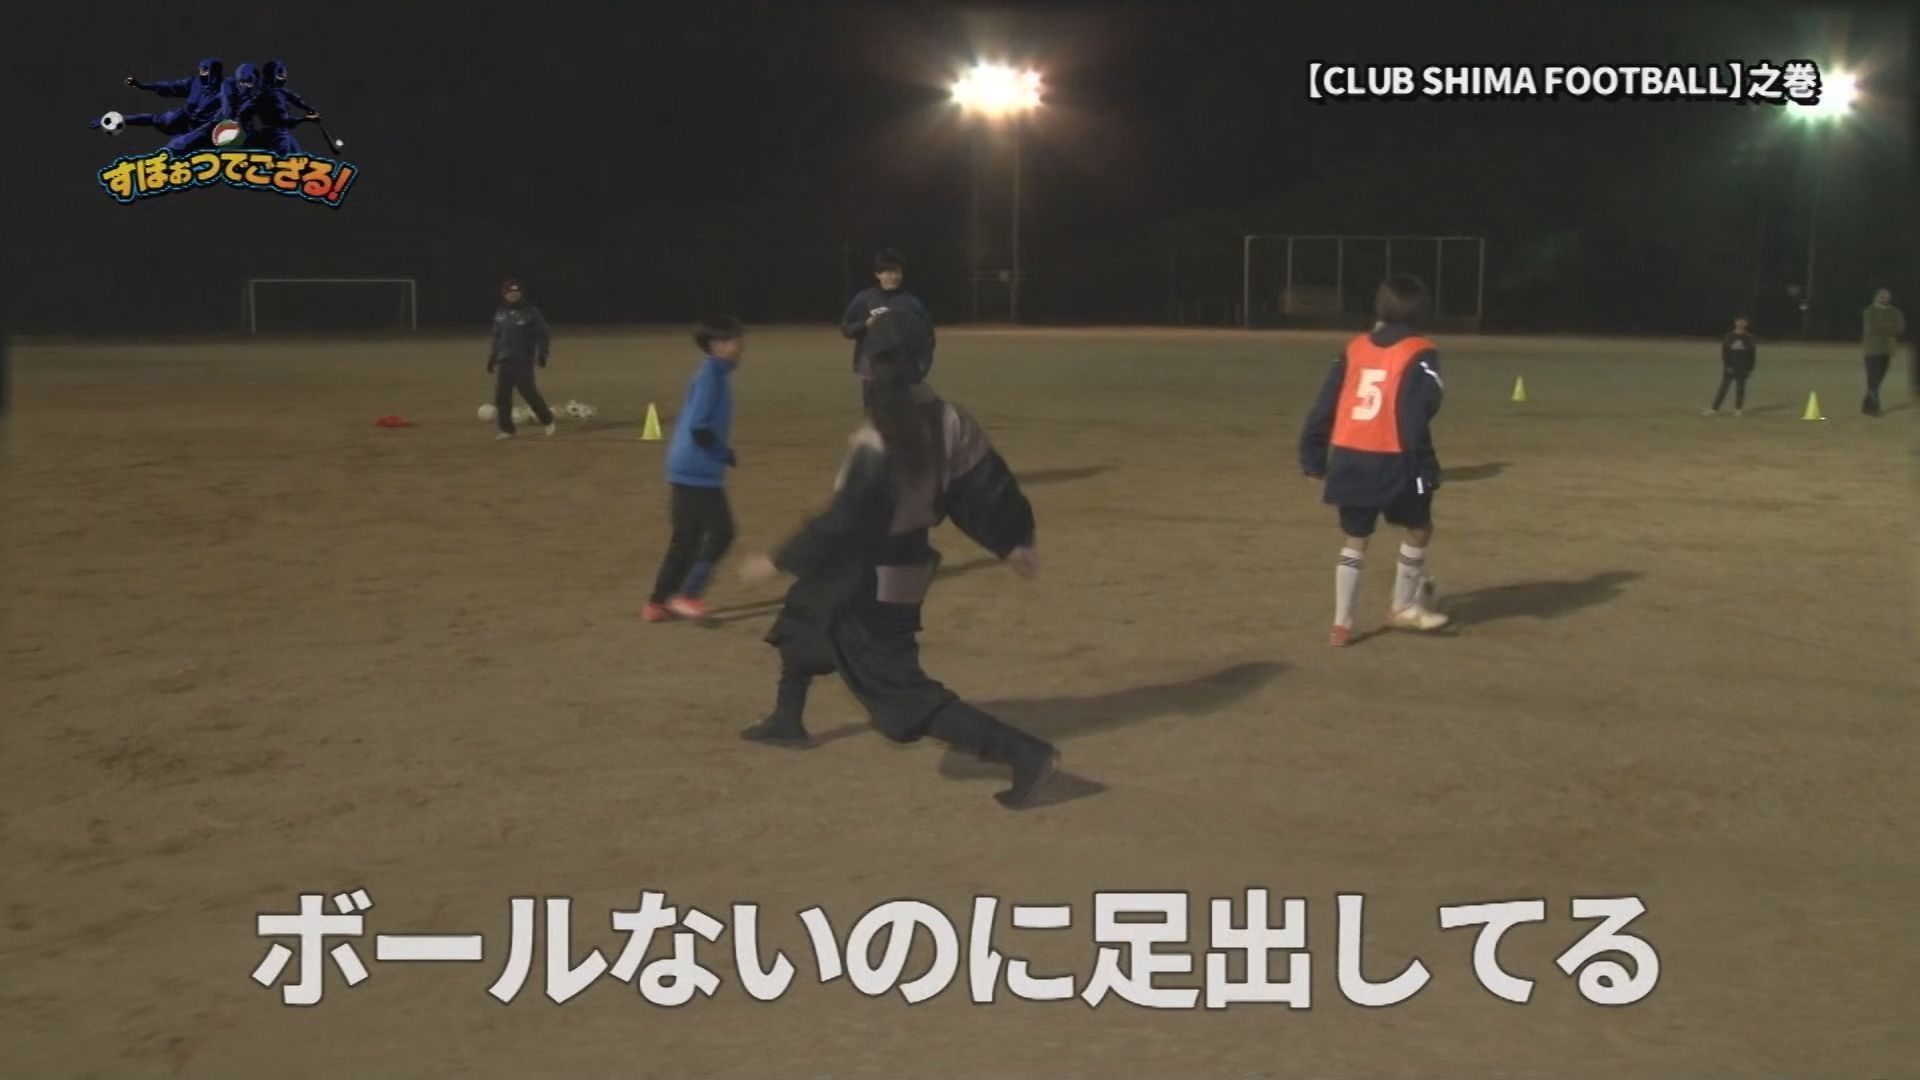 CLUB SHIMA FOOTBALL（クラブ志摩フットボール）の様子